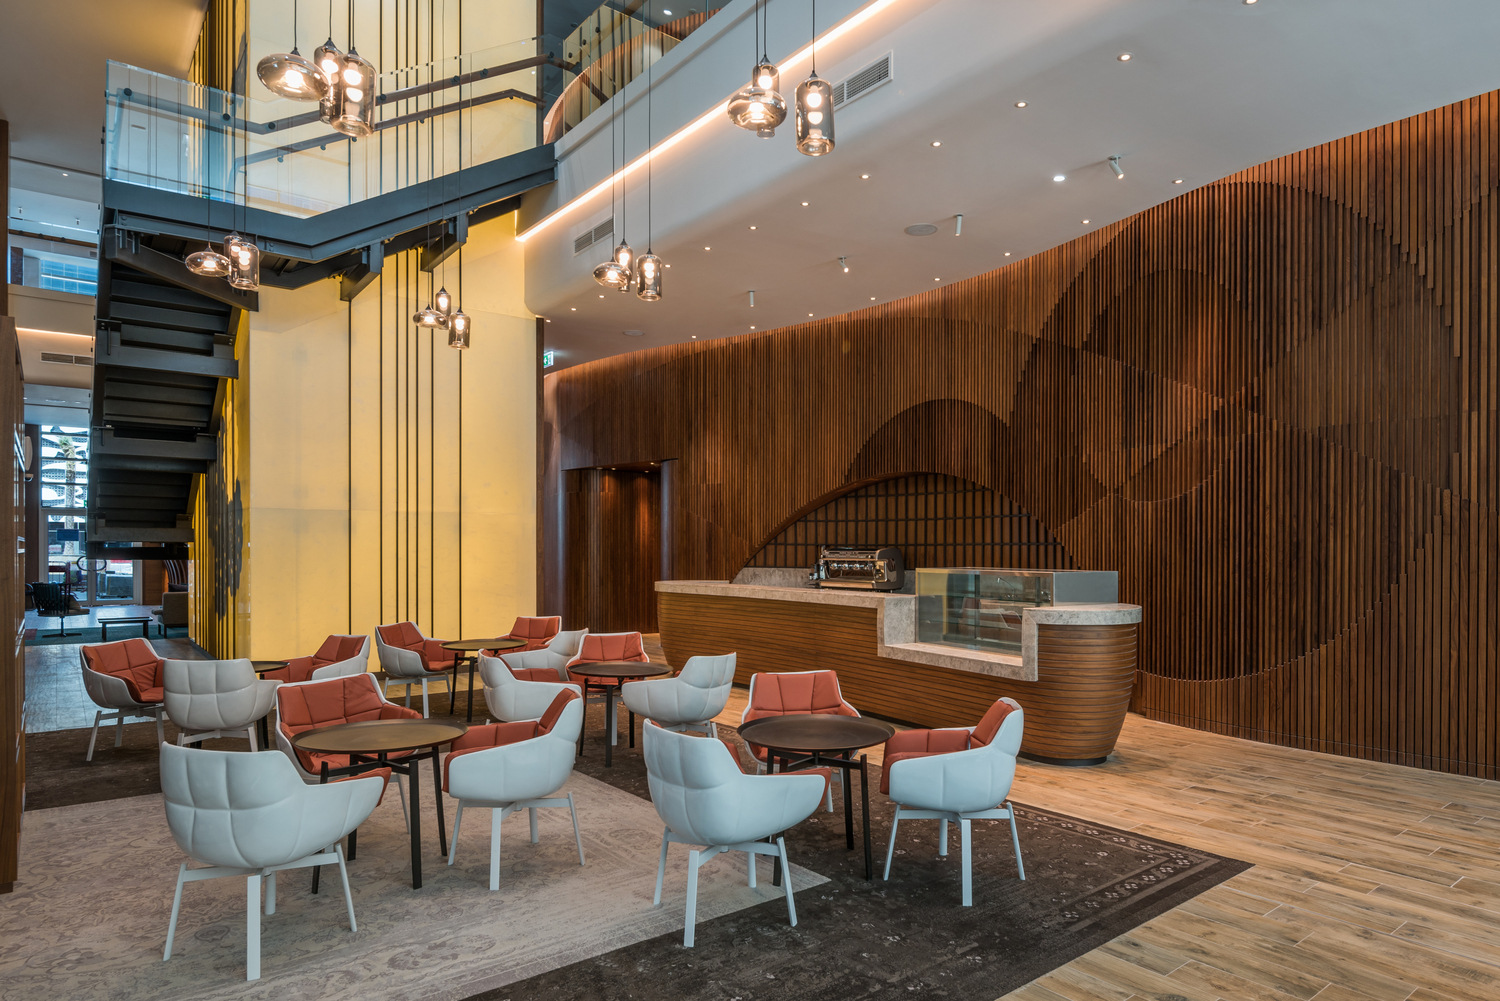 图片[4]|迪拜商务湾希尔顿双树酒店|ART-Arrakis | 建筑室内设计的创新与灵感